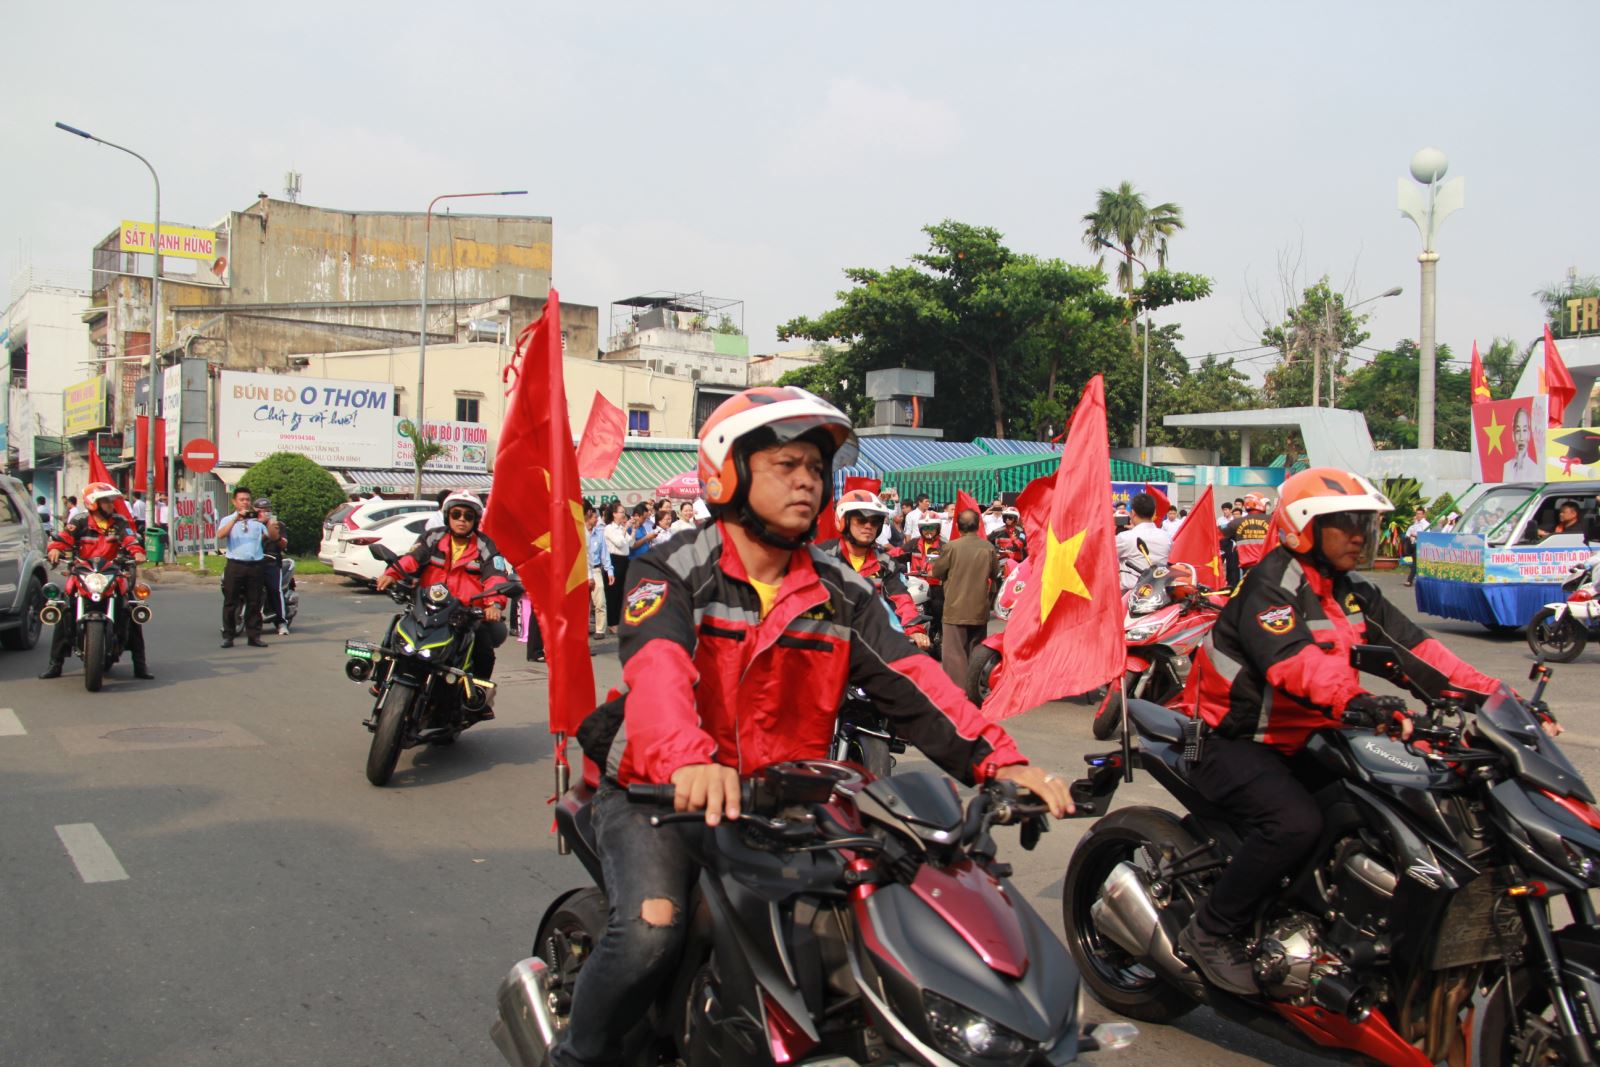 Quận Tân Bình: Tổ chức Lễ khai mạc 